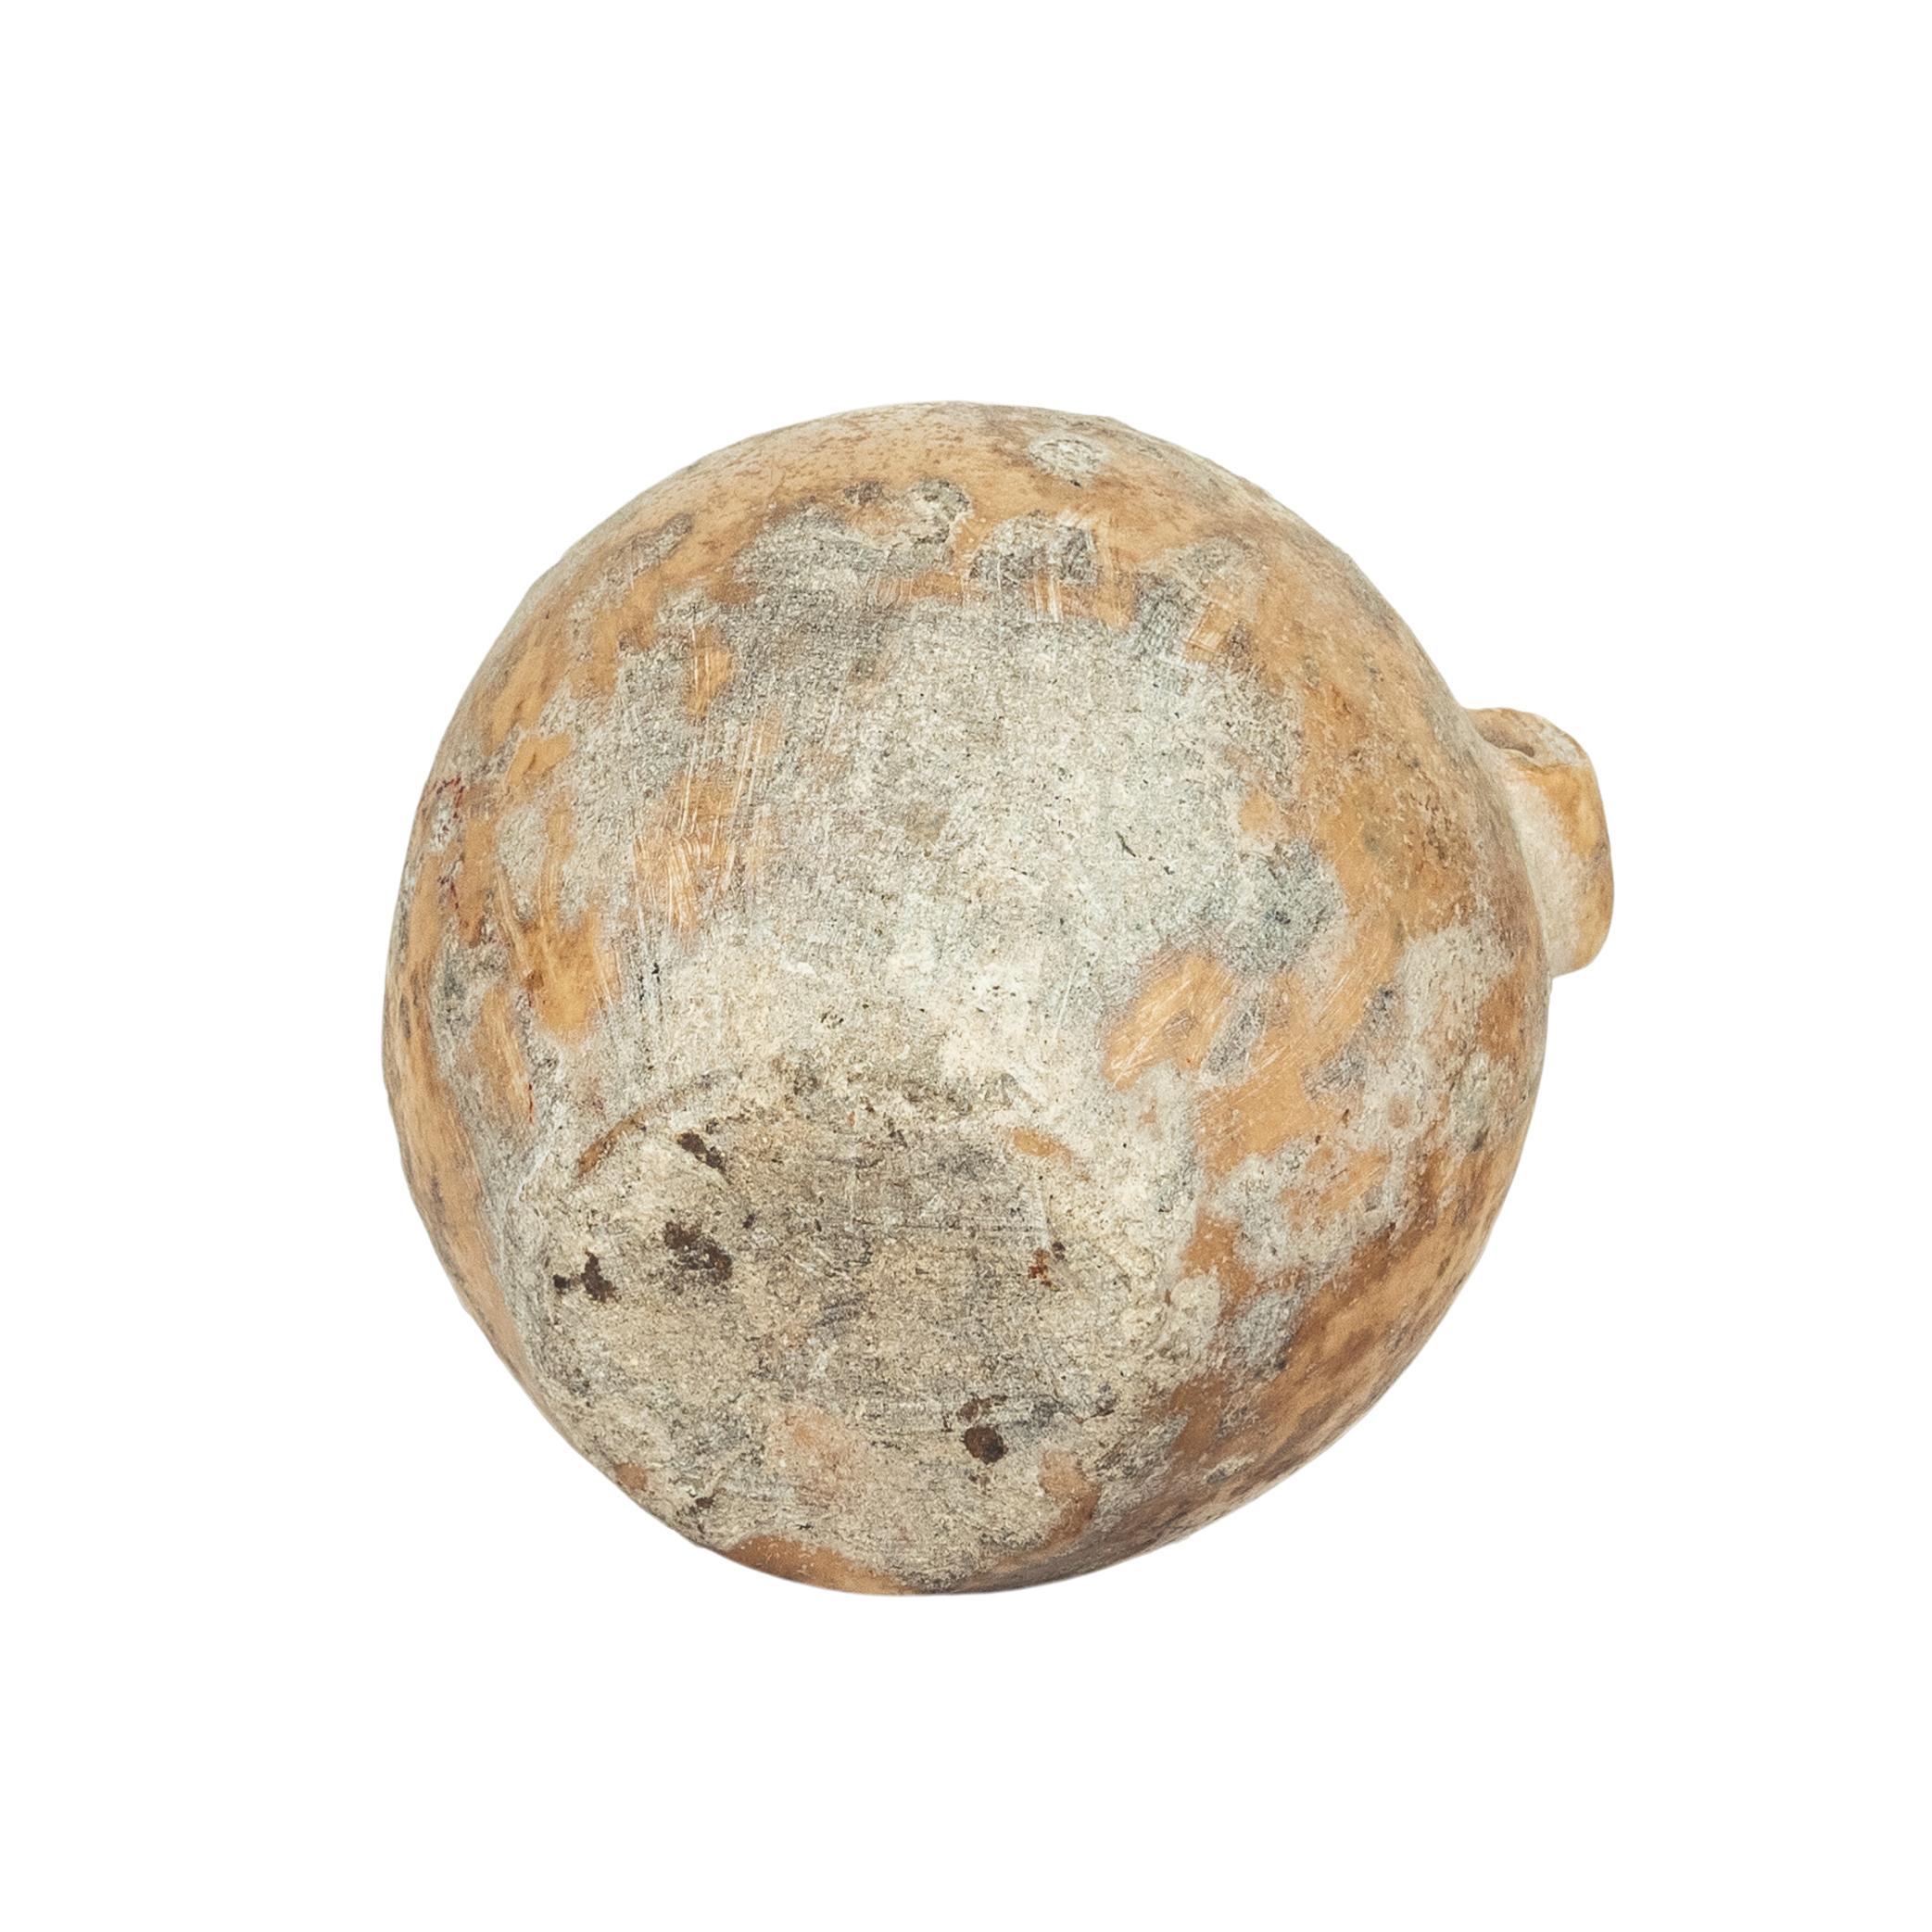 Altägyptisches Altes Reich Miniatur Kalkstein Gefäß JAR 2600-2800 v. Chr. 5